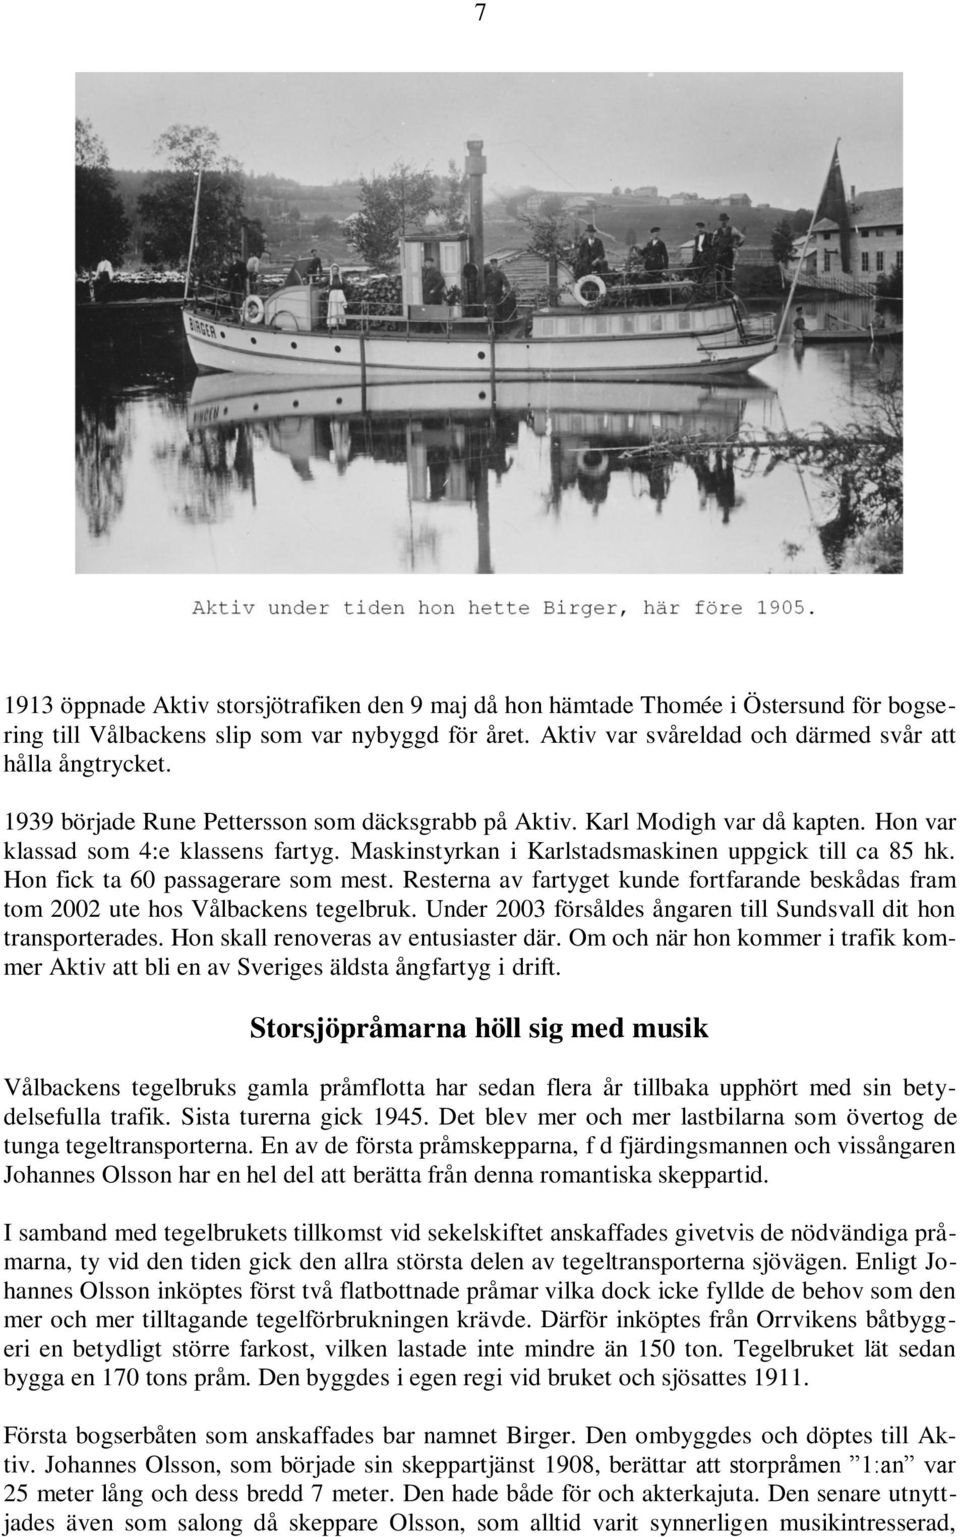 Hon fick ta 60 passagerare som mest. Resterna av fartyget kunde fortfarande beskådas fram tom 2002 ute hos Vålbackens tegelbruk. Under 2003 försåldes ångaren till Sundsvall dit hon transporterades.